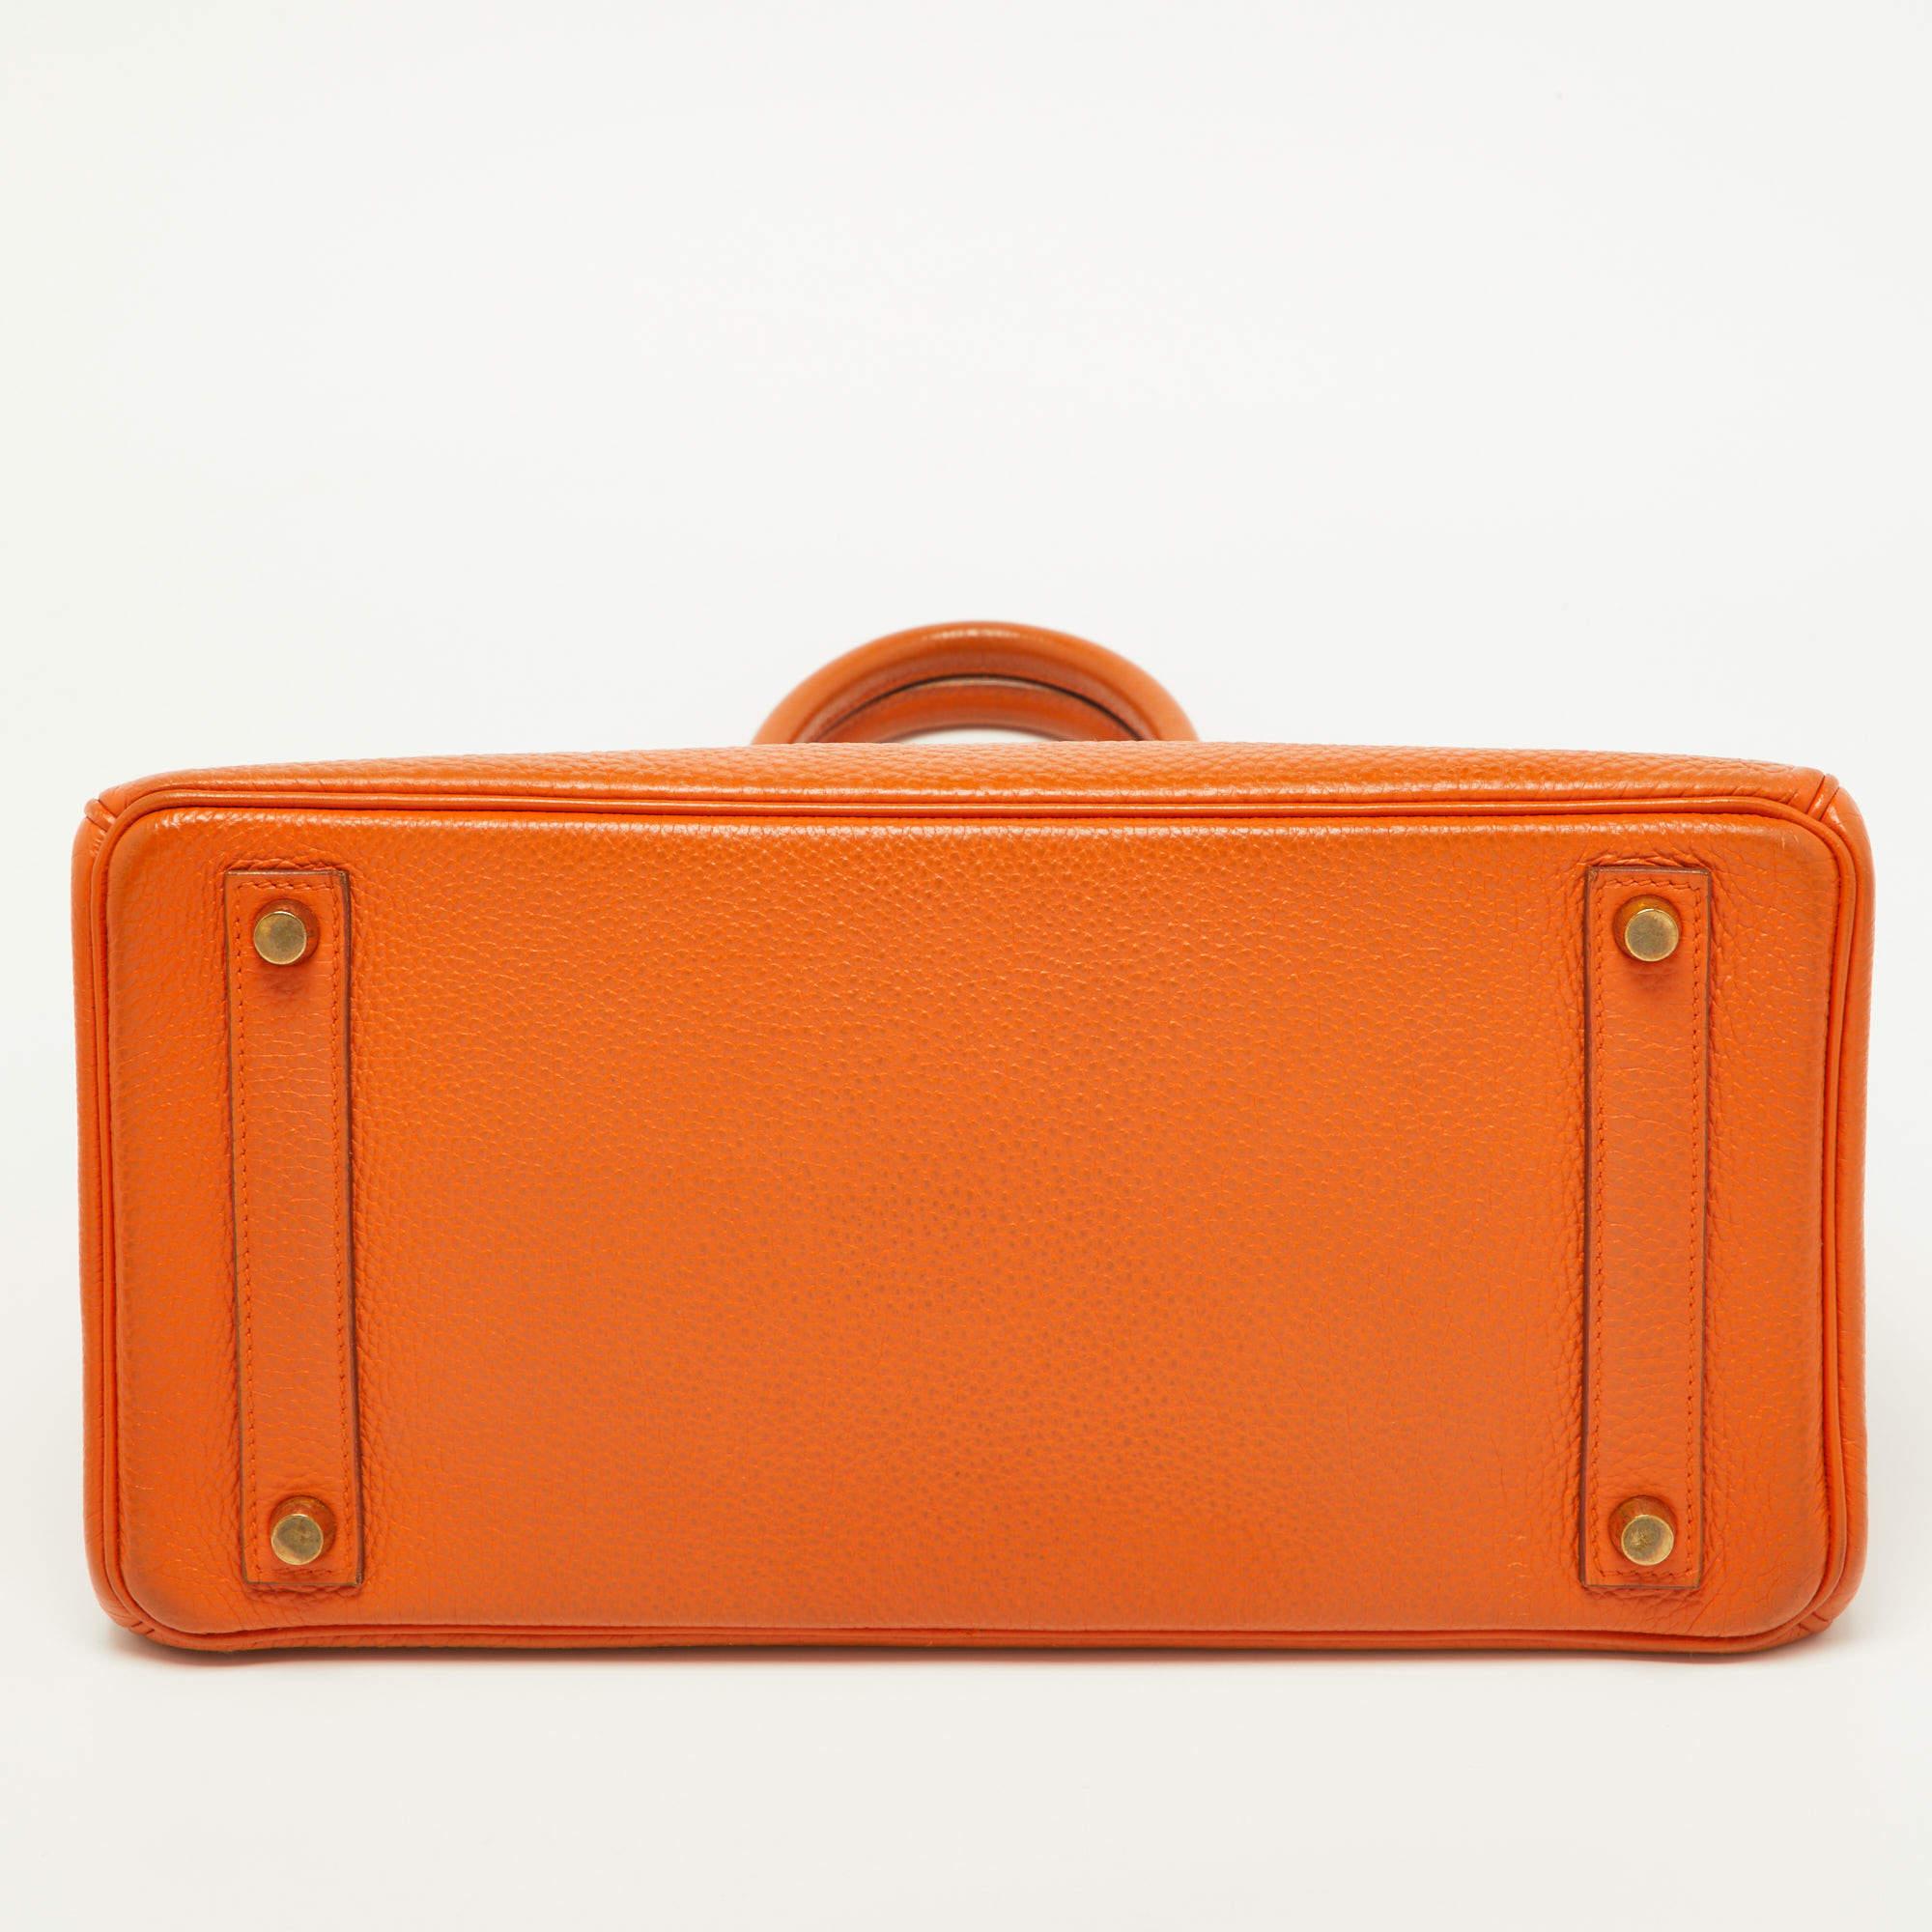 Hermes Orange Togo Leather Gold Hardware HAC Birkin 32 Bag For Sale 7